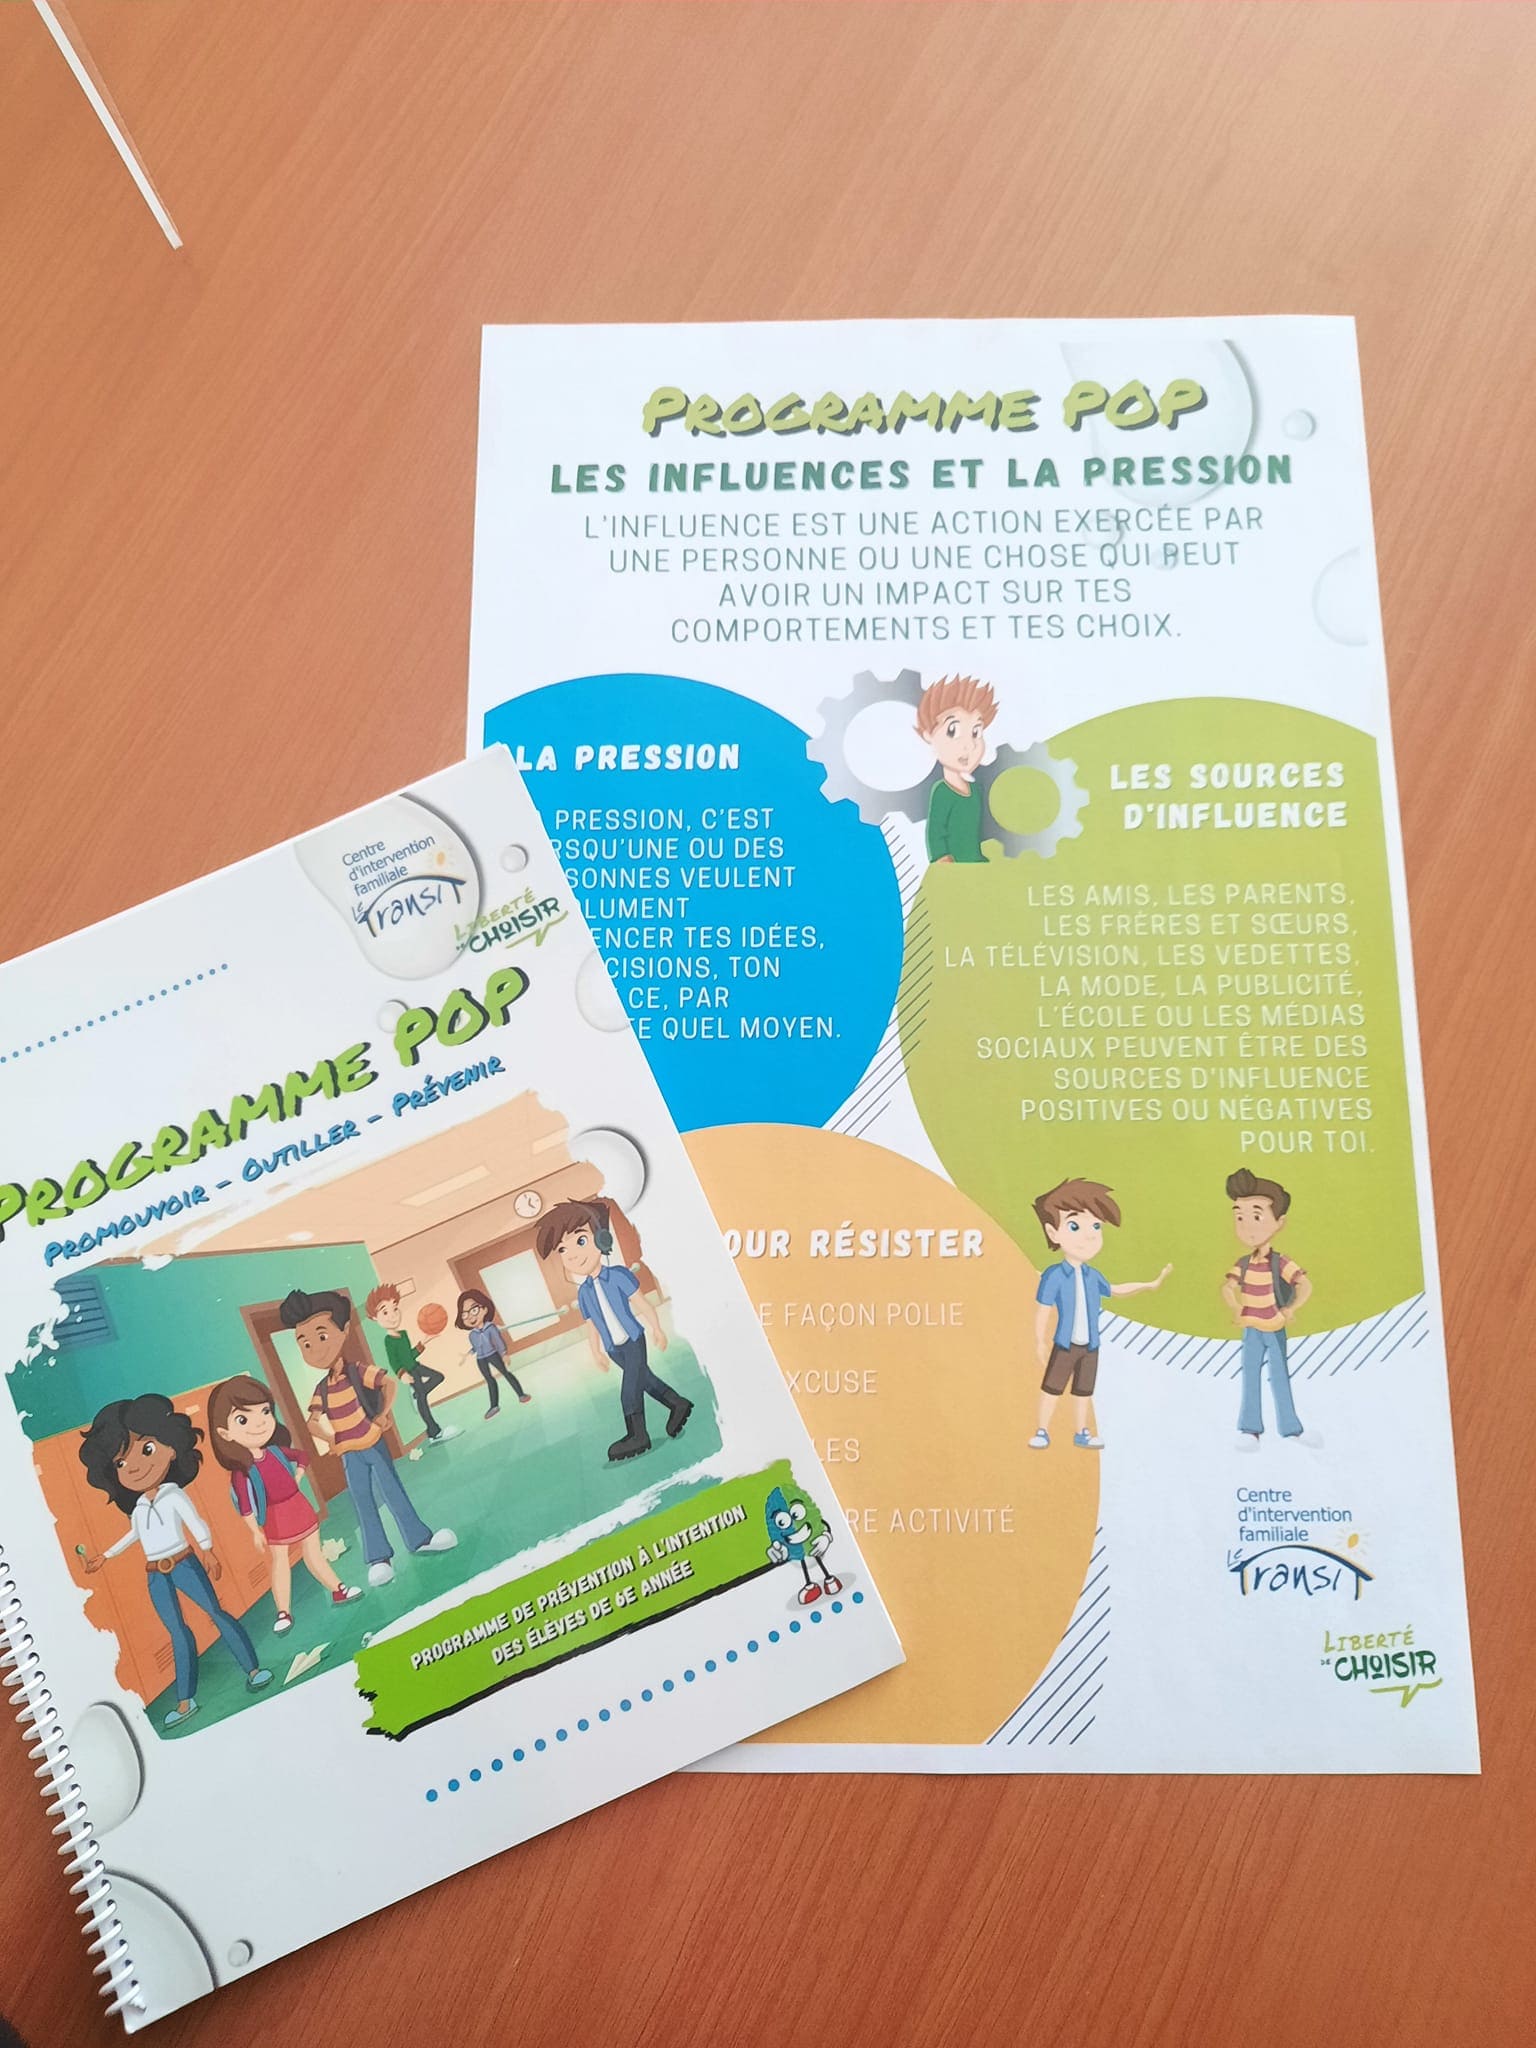 Programme POP - les influences et la pression | Centre d'intervention familiale Le Transit